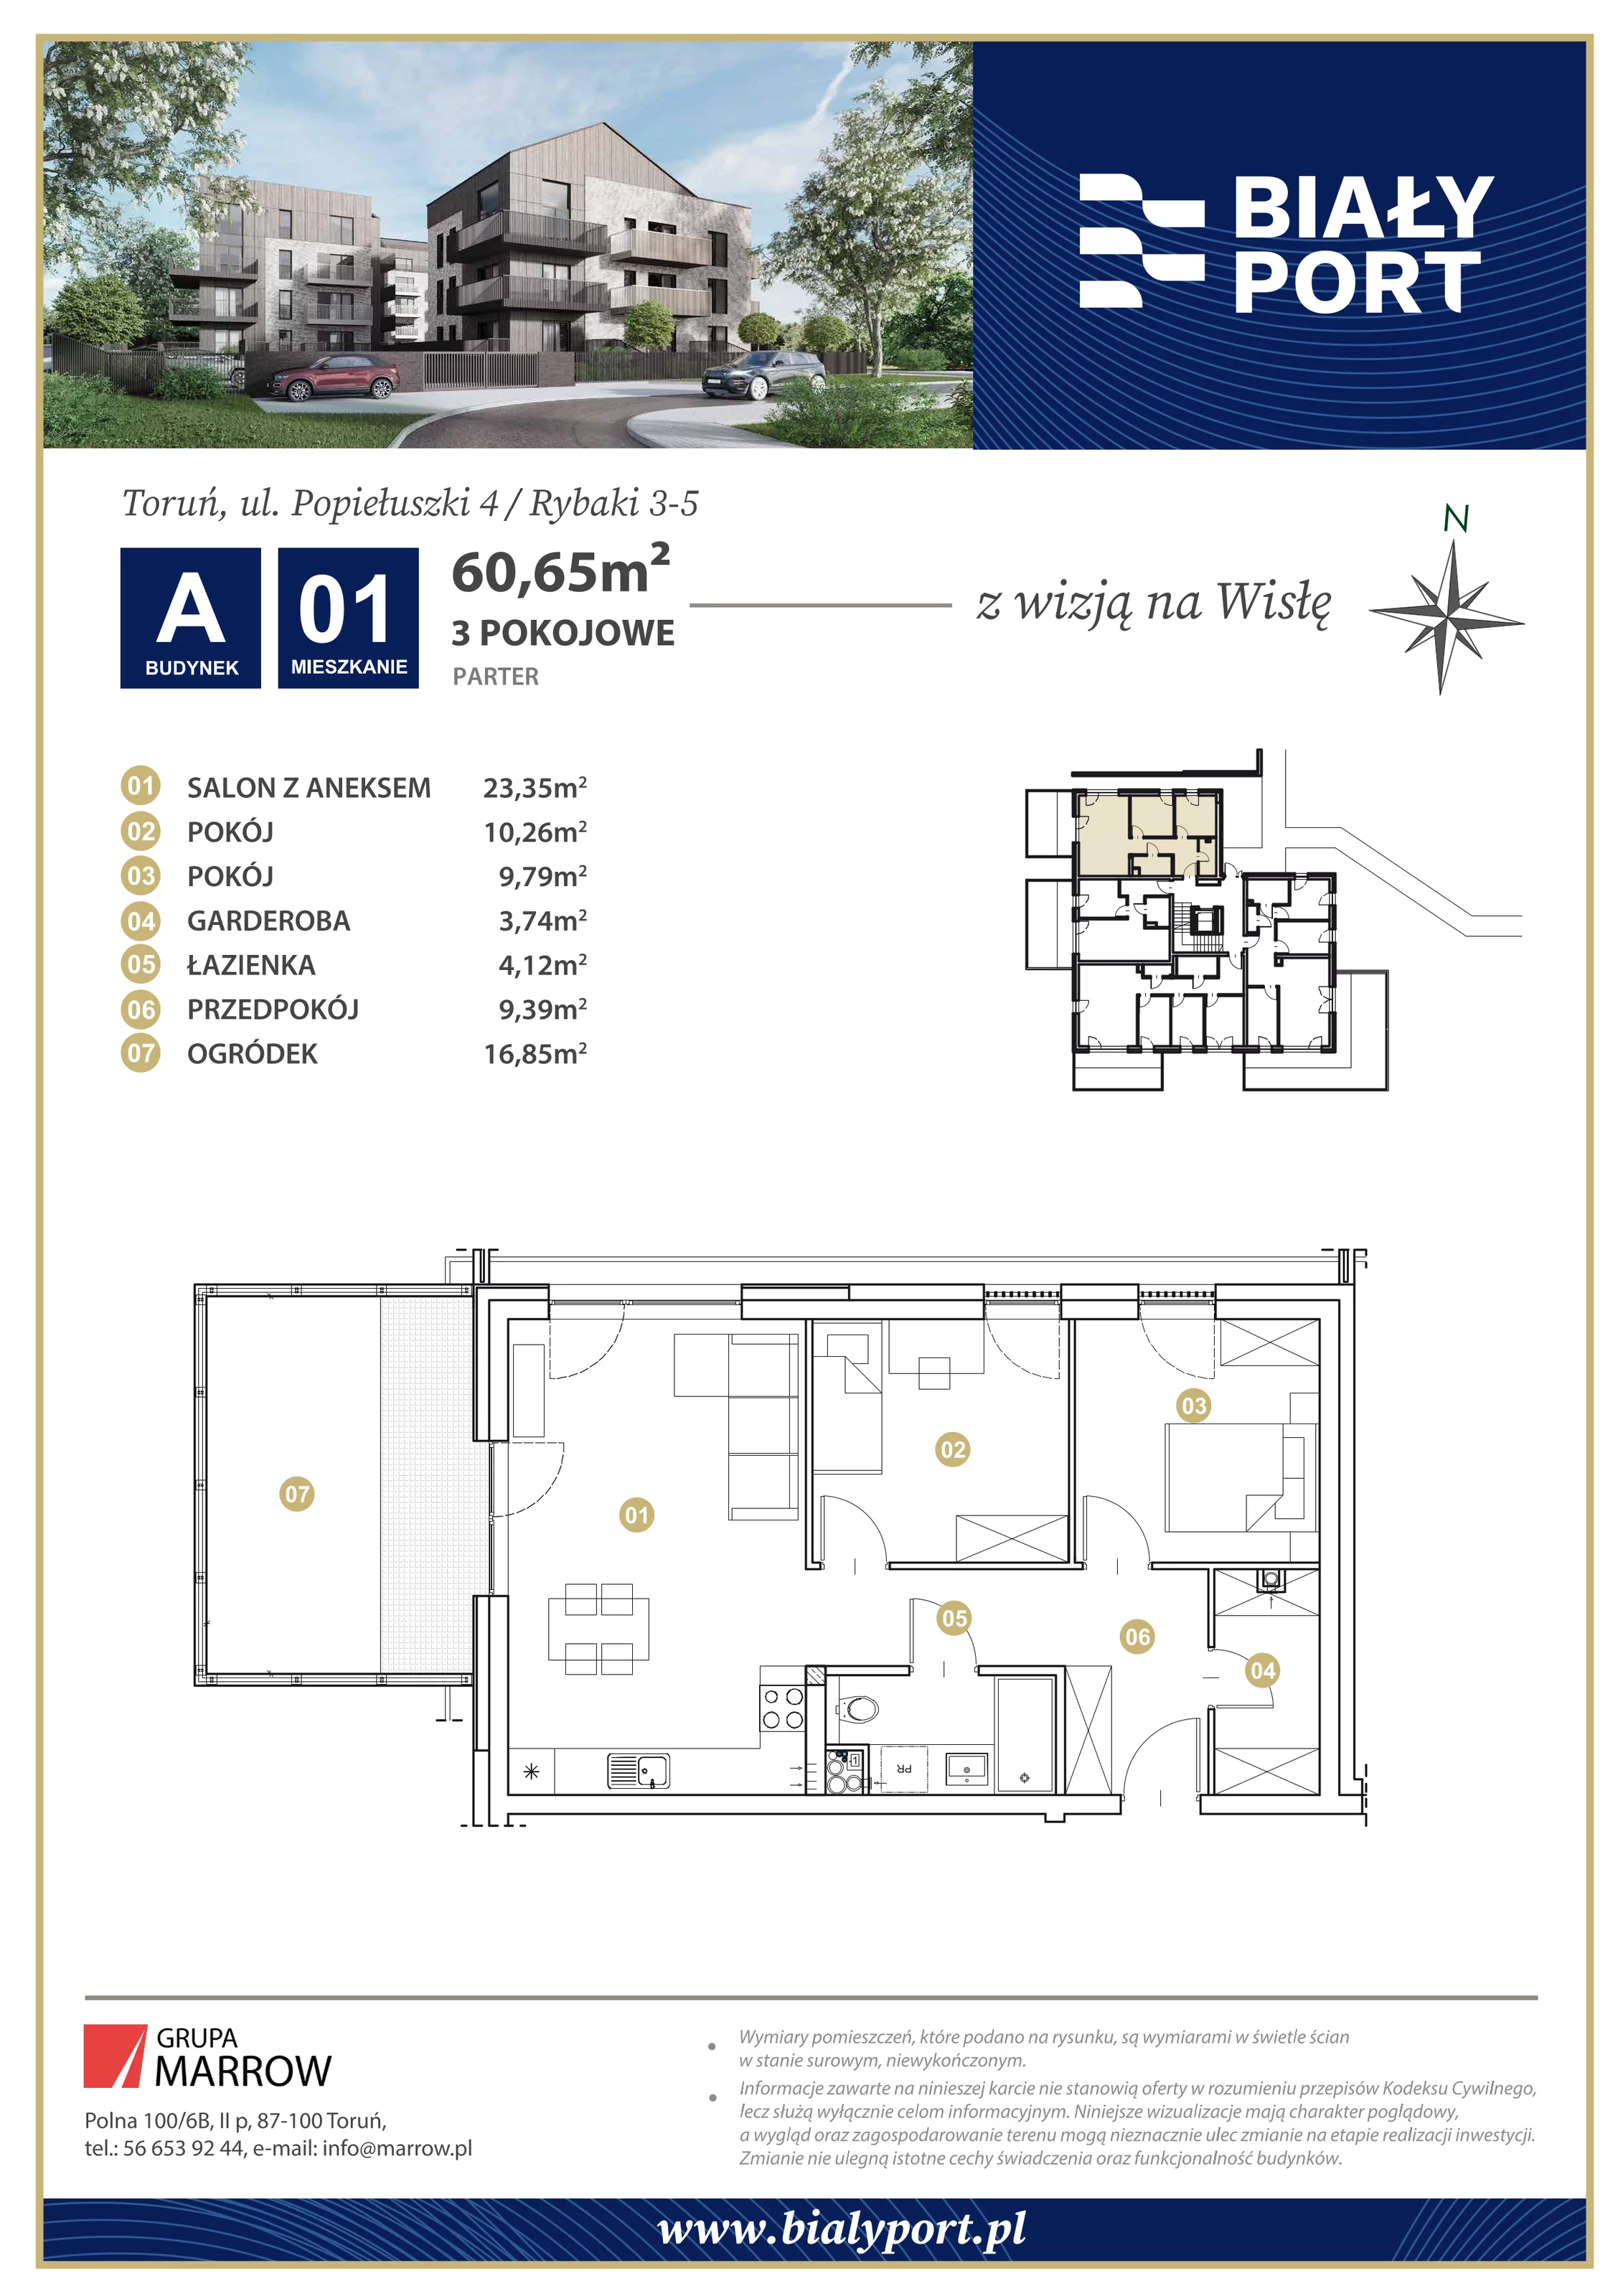 Mieszkanie 60,65 m², parter, oferta nr 1, Biały Port, Toruń, Rybaki, ul. Popiełuszki 4